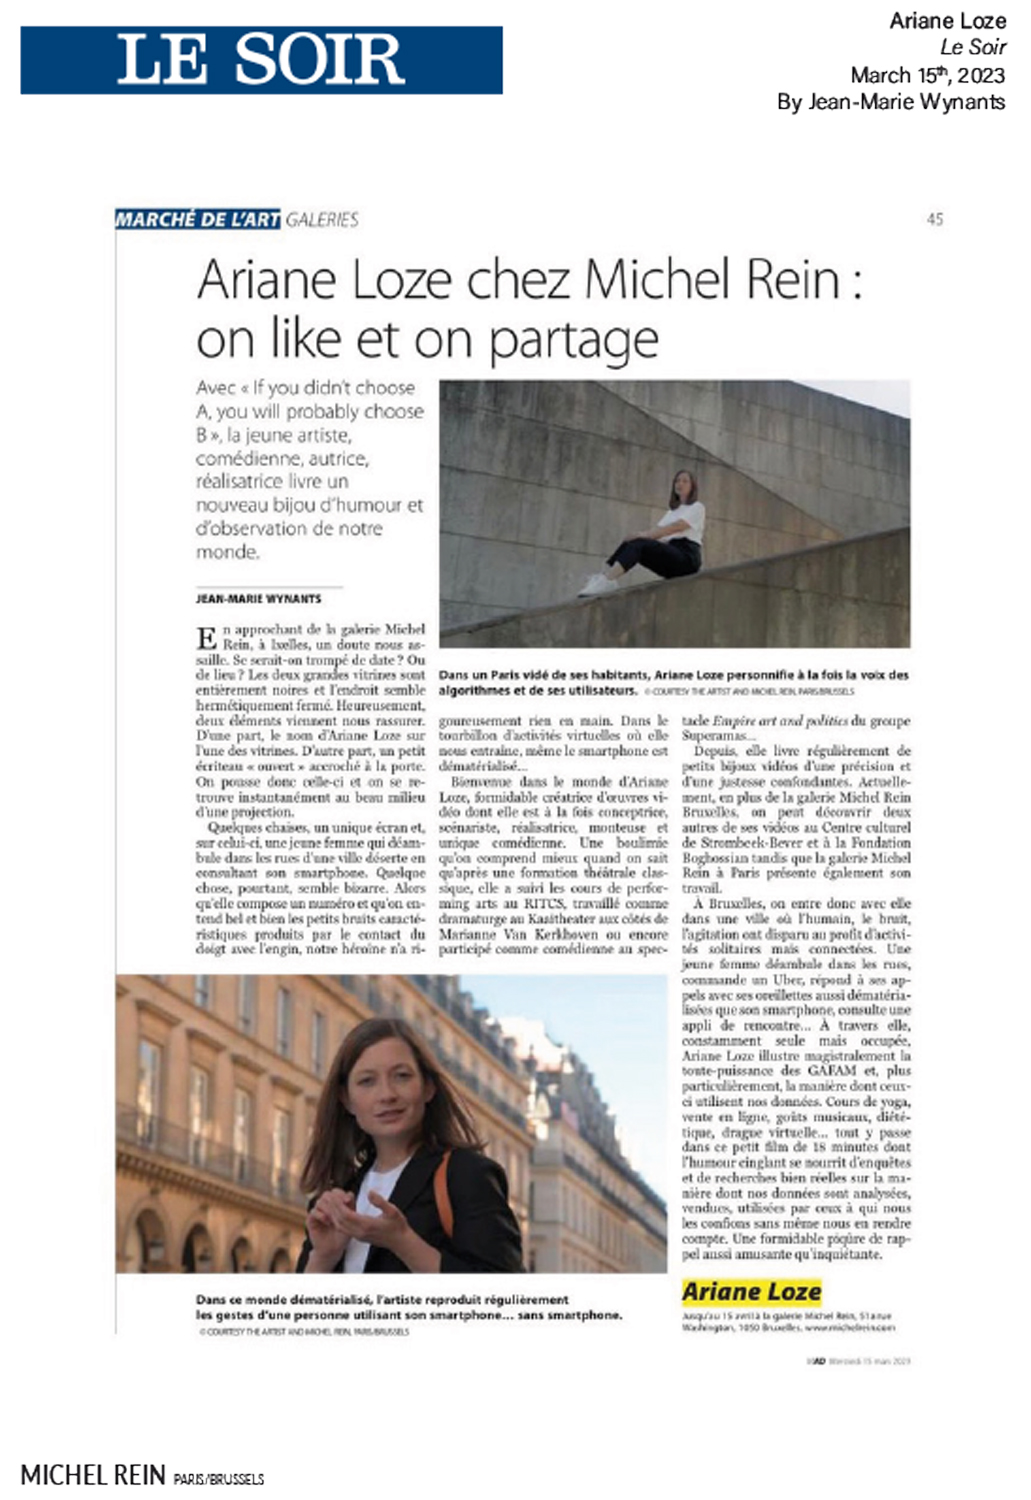 Ariane Loze chez Michel Rein - Le Soir